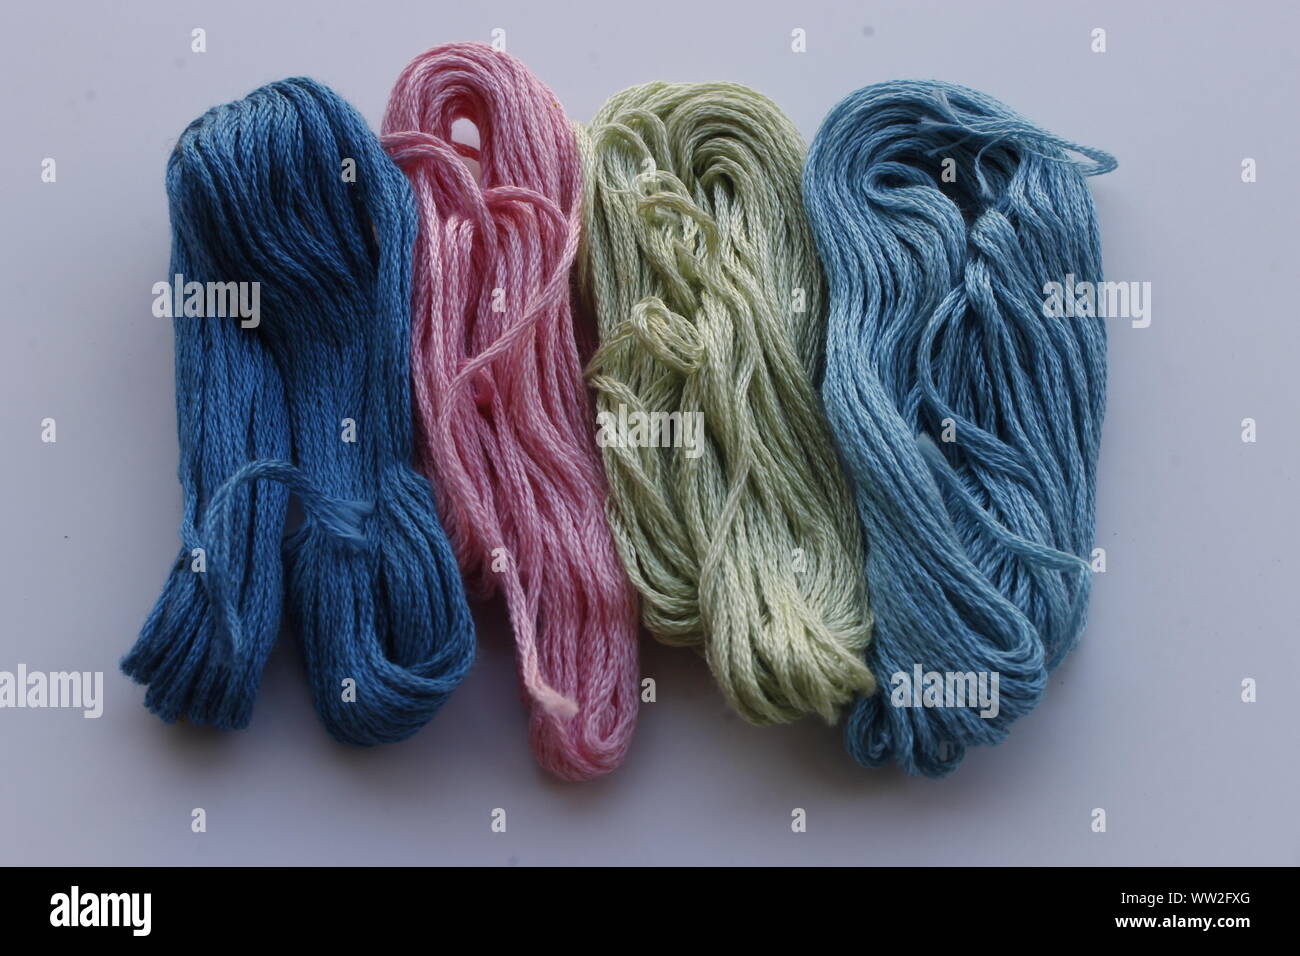 Image de couleur différente woollen thread Banque D'Images